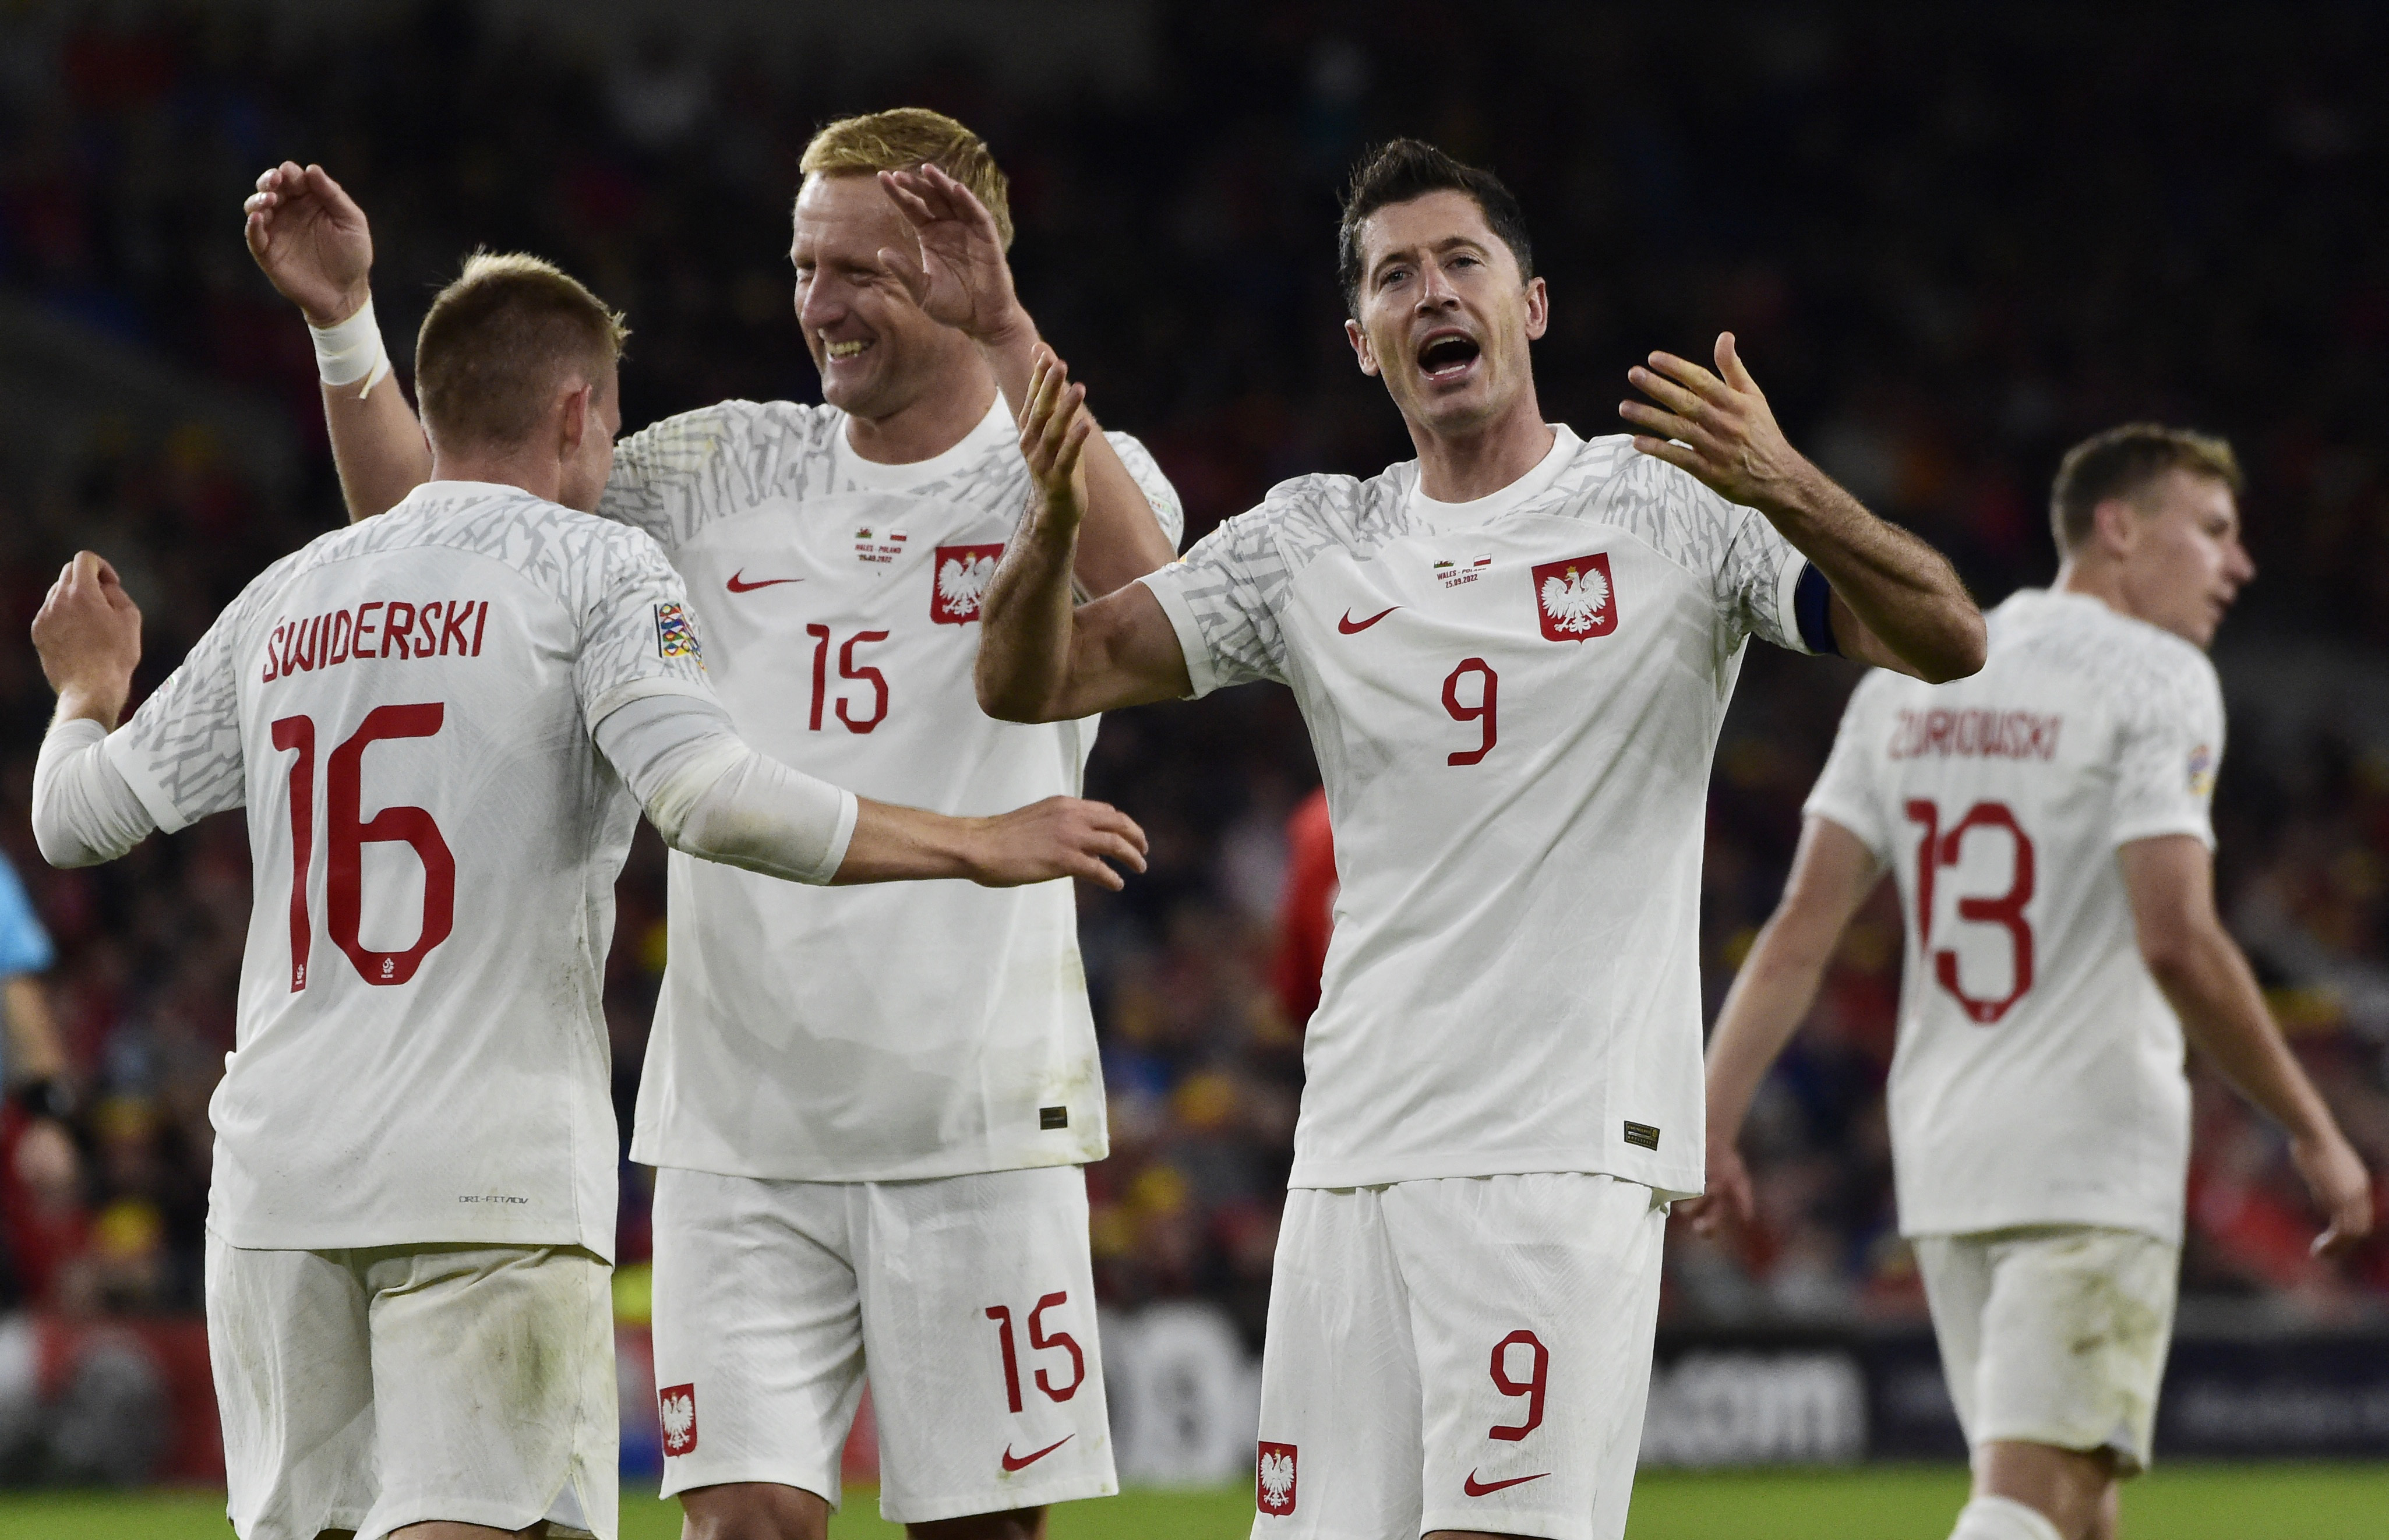 La selección polaca de fútbol tiene ilusiones de cara al Mundial de Qatar 2022 con Robert Lewandowski como principal figura REUTERS/Rebecca Naden